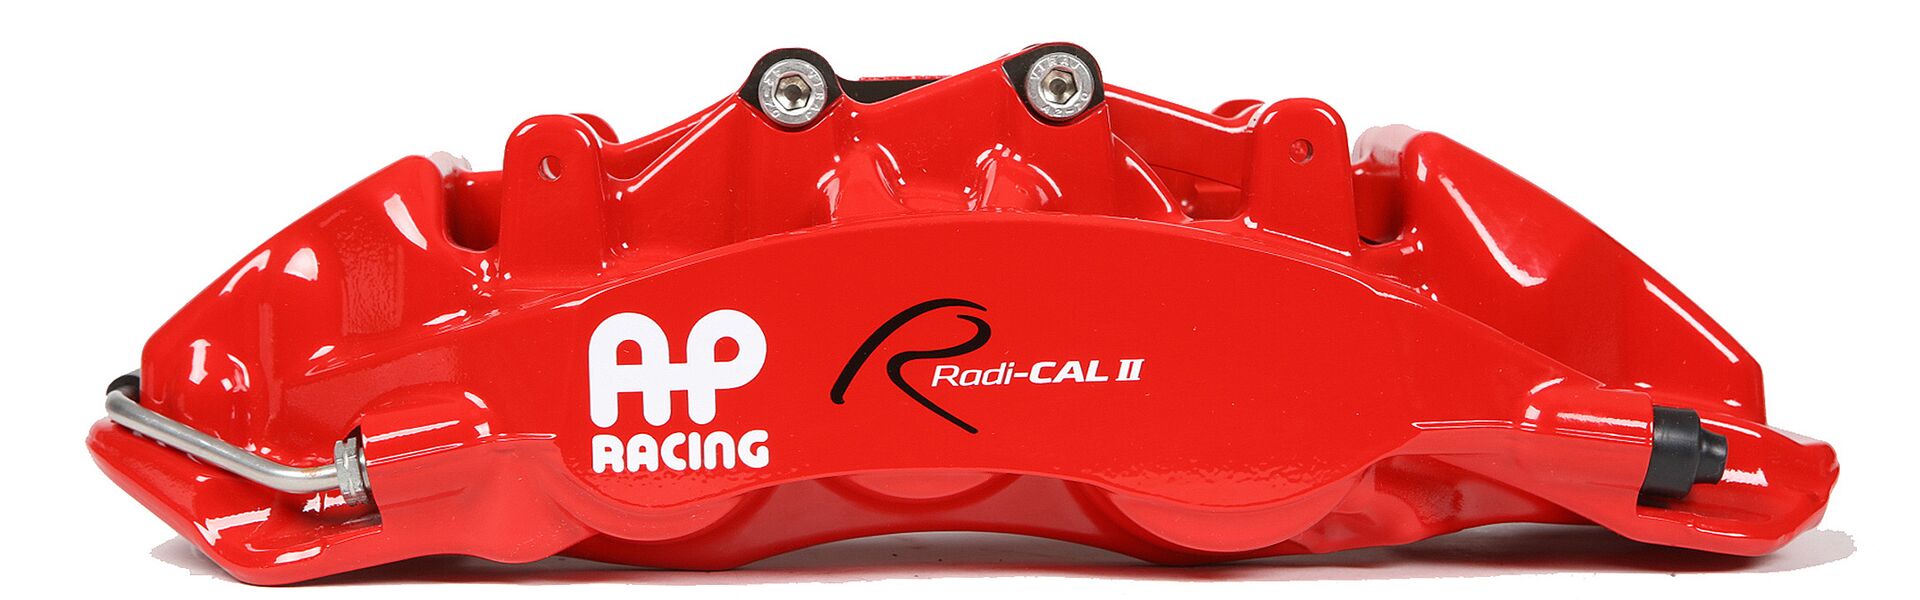 Rear brake kit AP Racing for Tuning/Trackday